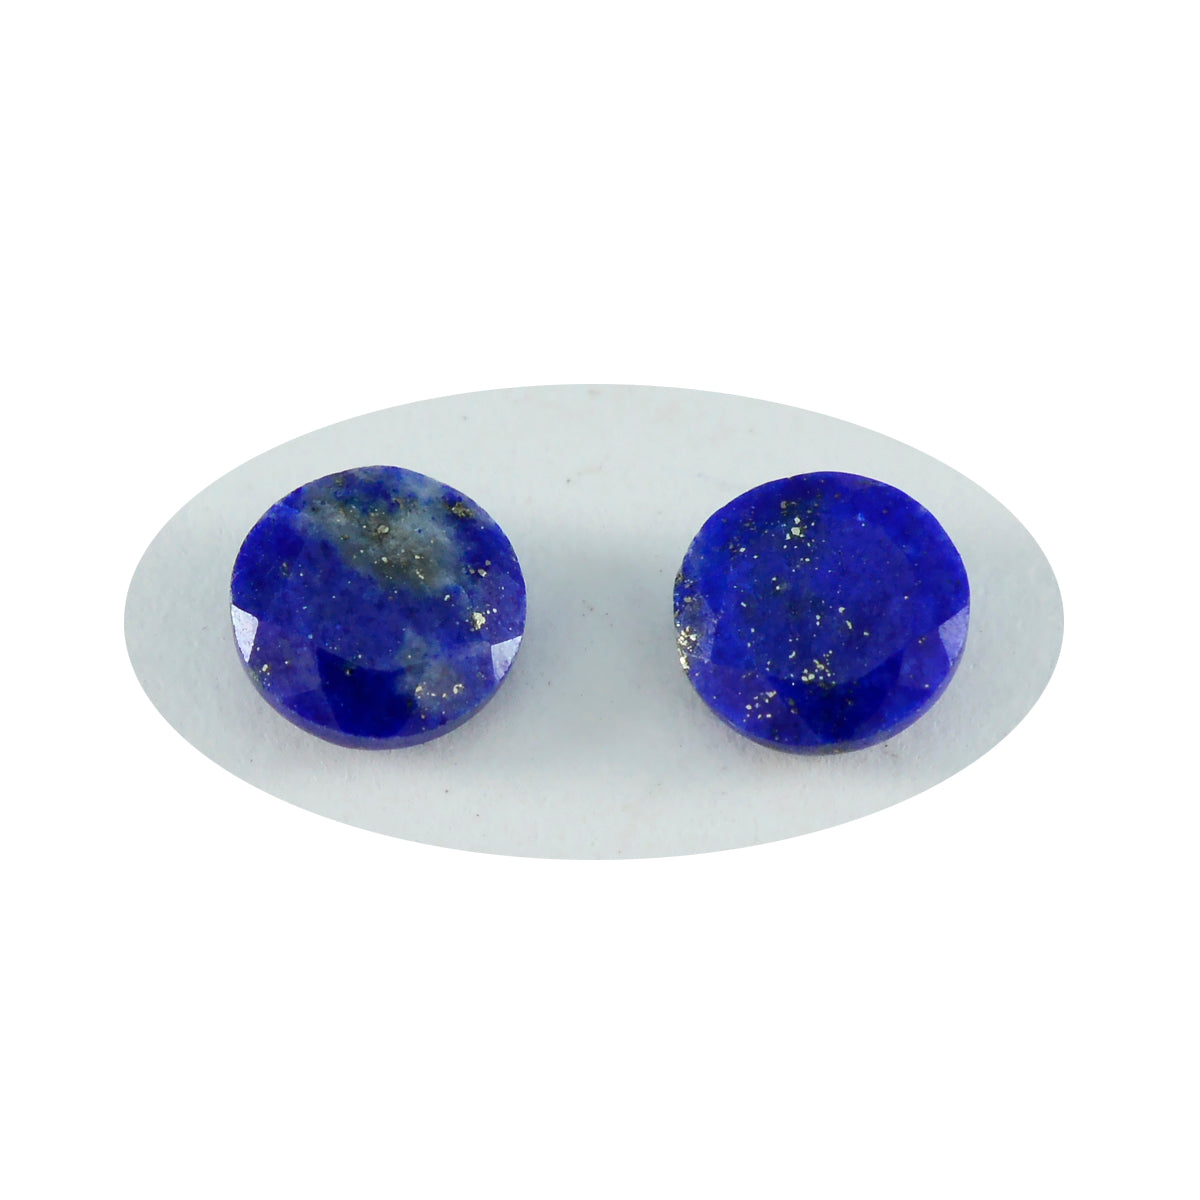 Riyogems, 1 pieza, lapislázuli azul real facetado, 13x13mm, forma redonda, piedra de buena calidad